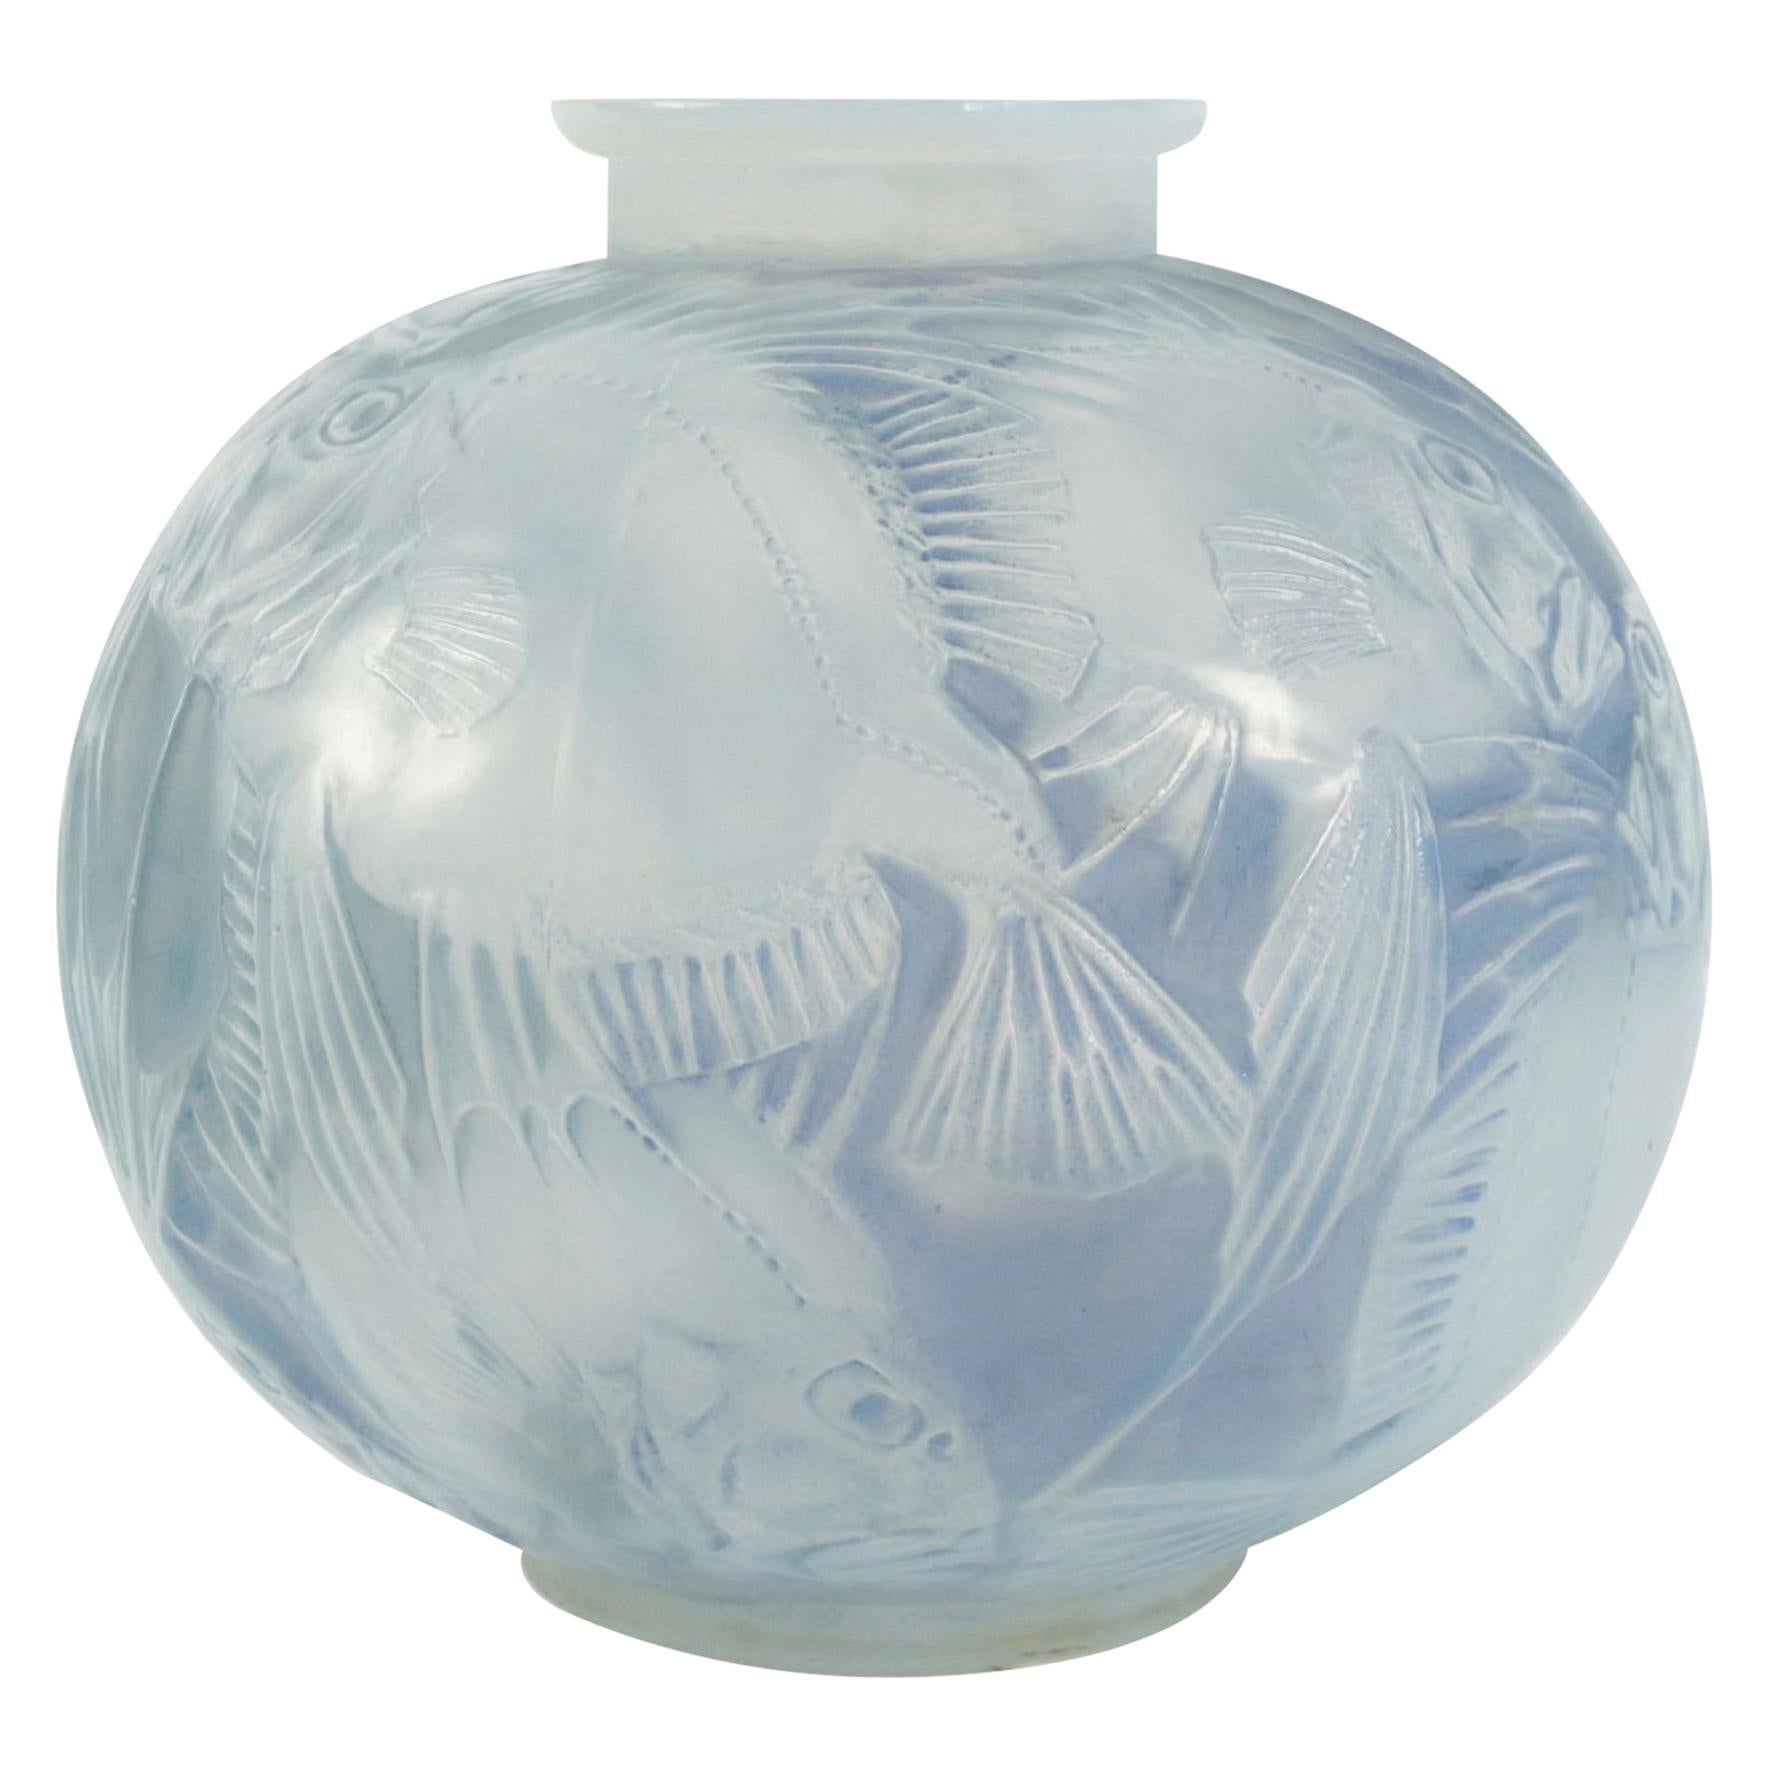 René Lalique Opalescent Vase "Poissons"